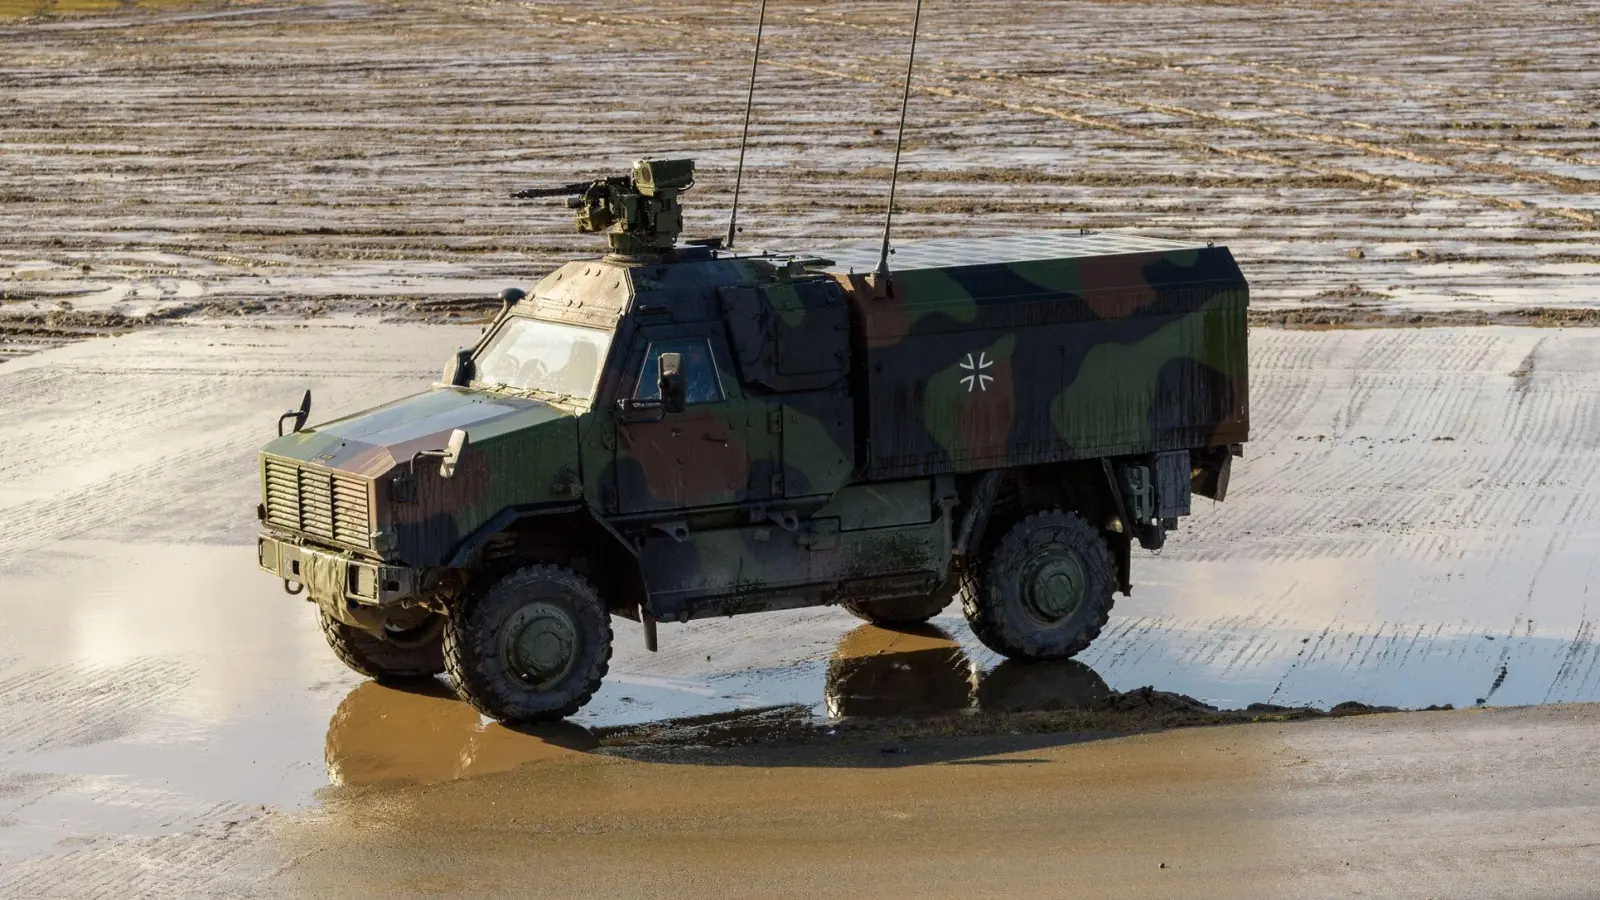 Das Allschutz-Transport-Fahrzeug vom Typ Dingo der Bundeswehr steht auf dem Truppenübungsplatz. (Foto: Philipp Schulze/dpa)